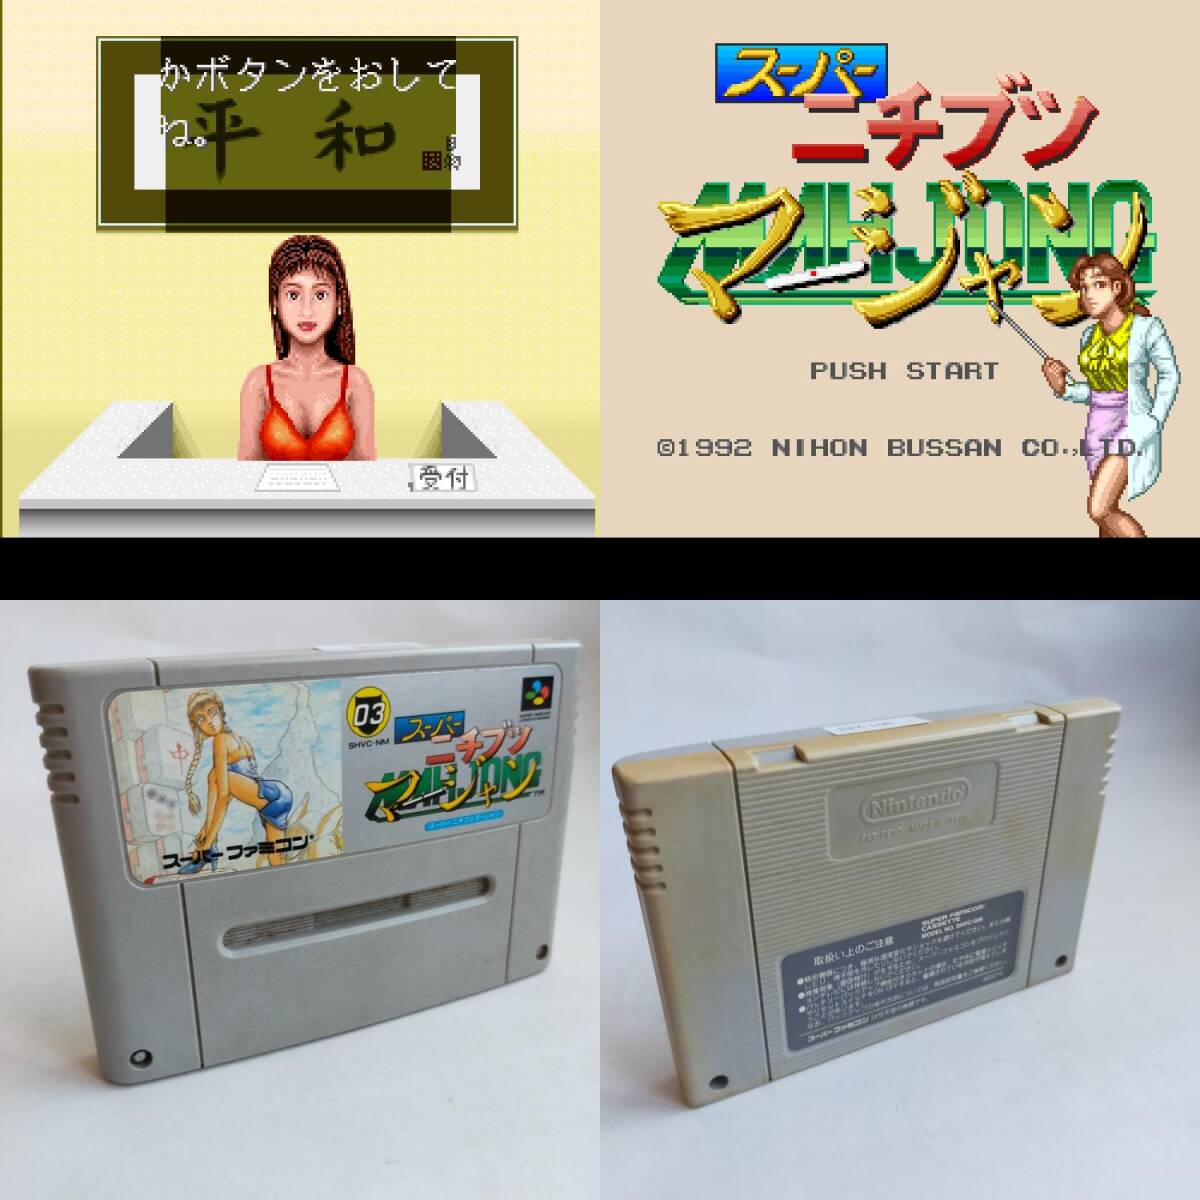  super nichibtsu маджонг (TBG) Super Famicom рабочее состояние подтверждено * терминал чистка settled [SFC6463_106]